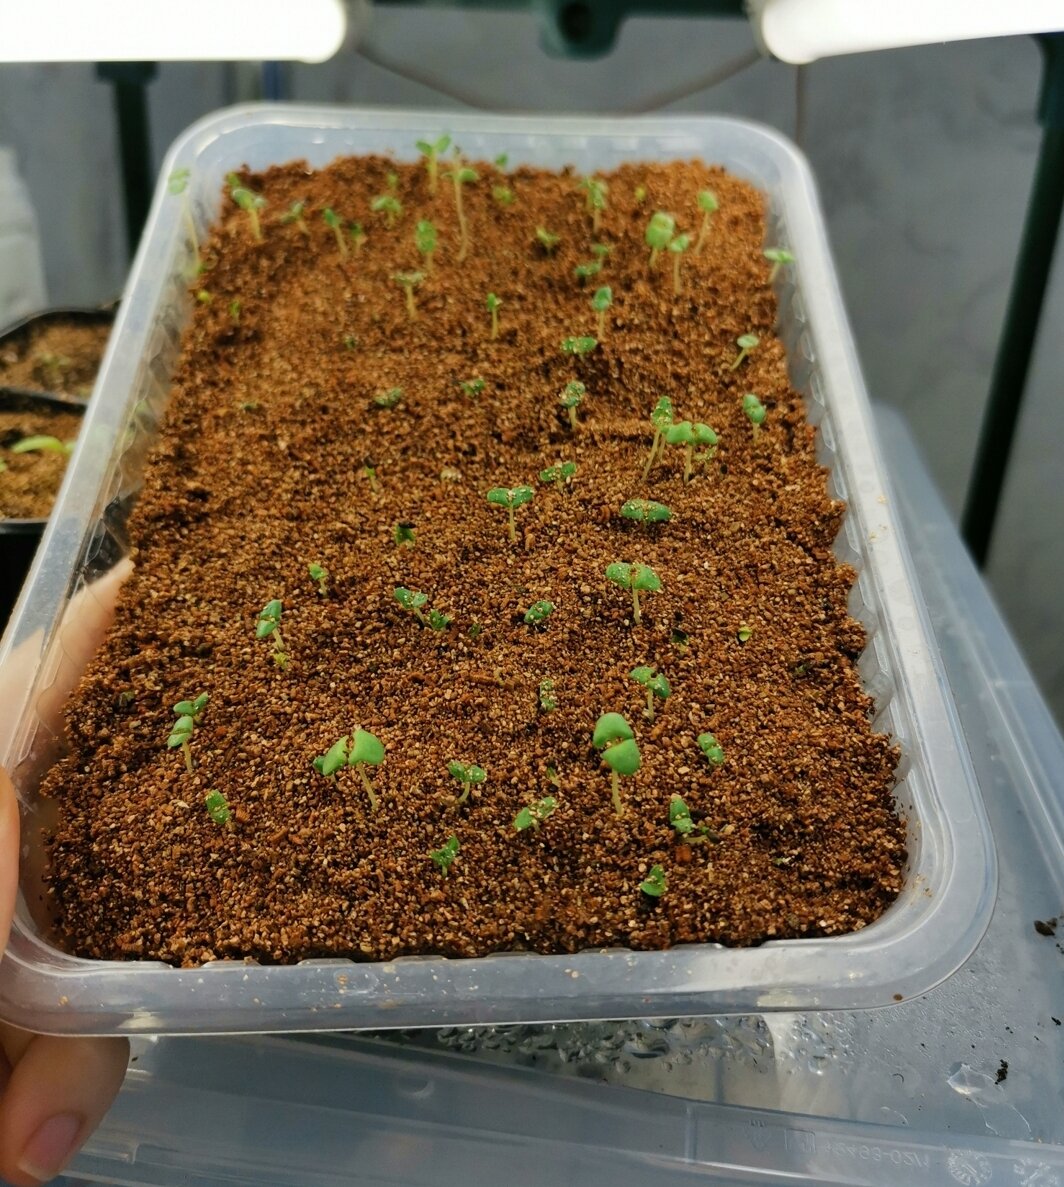 Как вырастить лаванду из семян